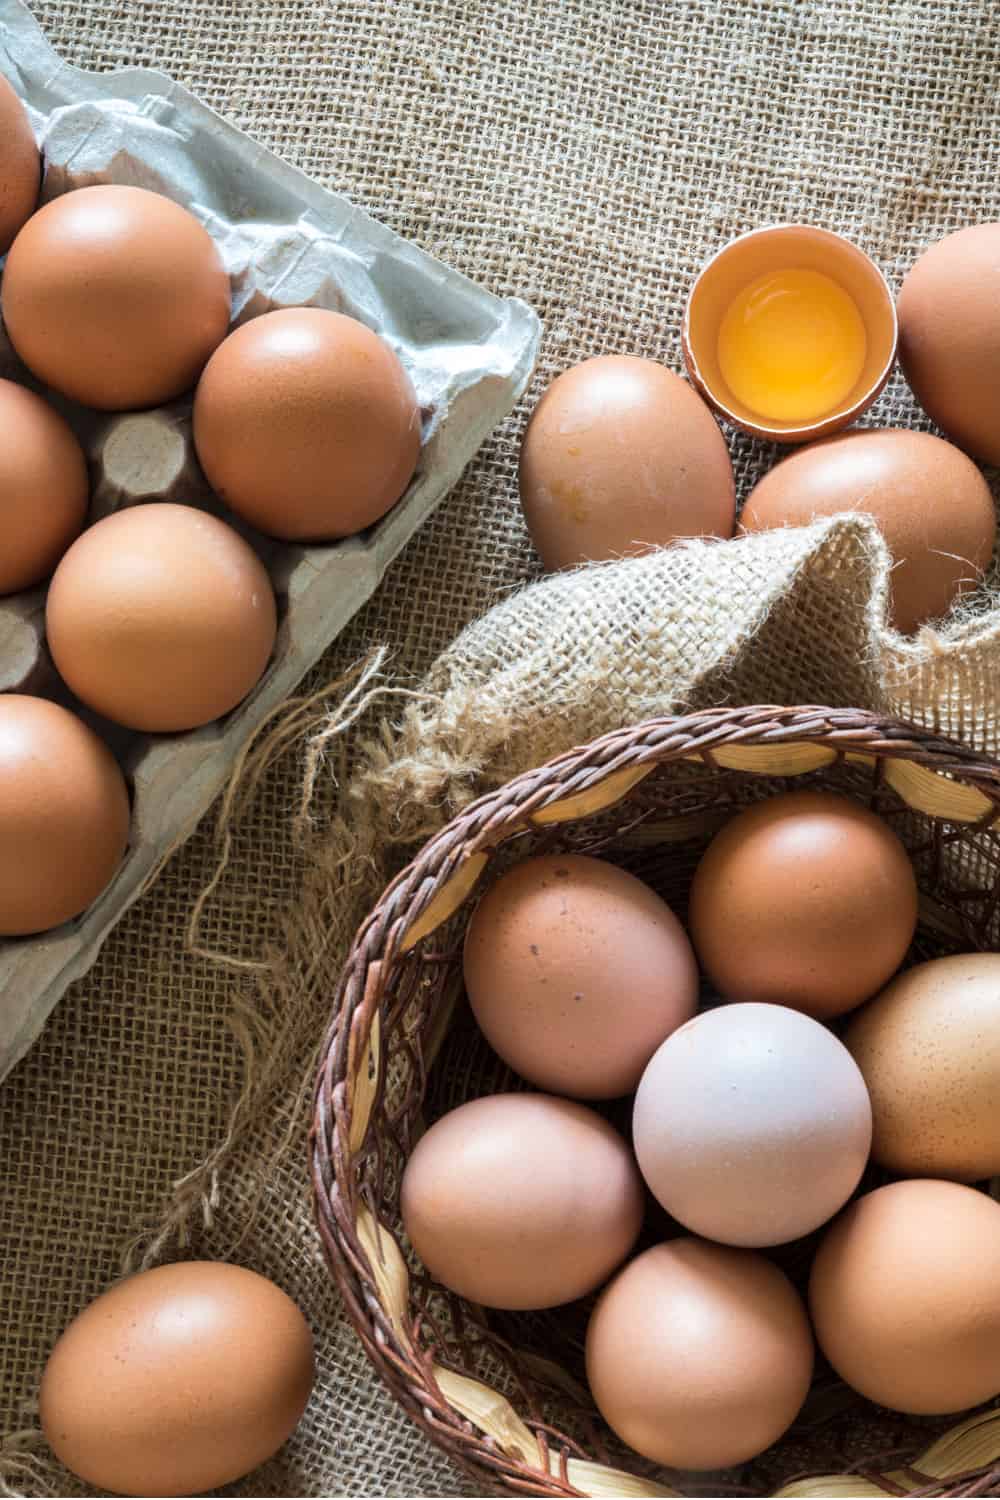 How Long Do Eggs Last?